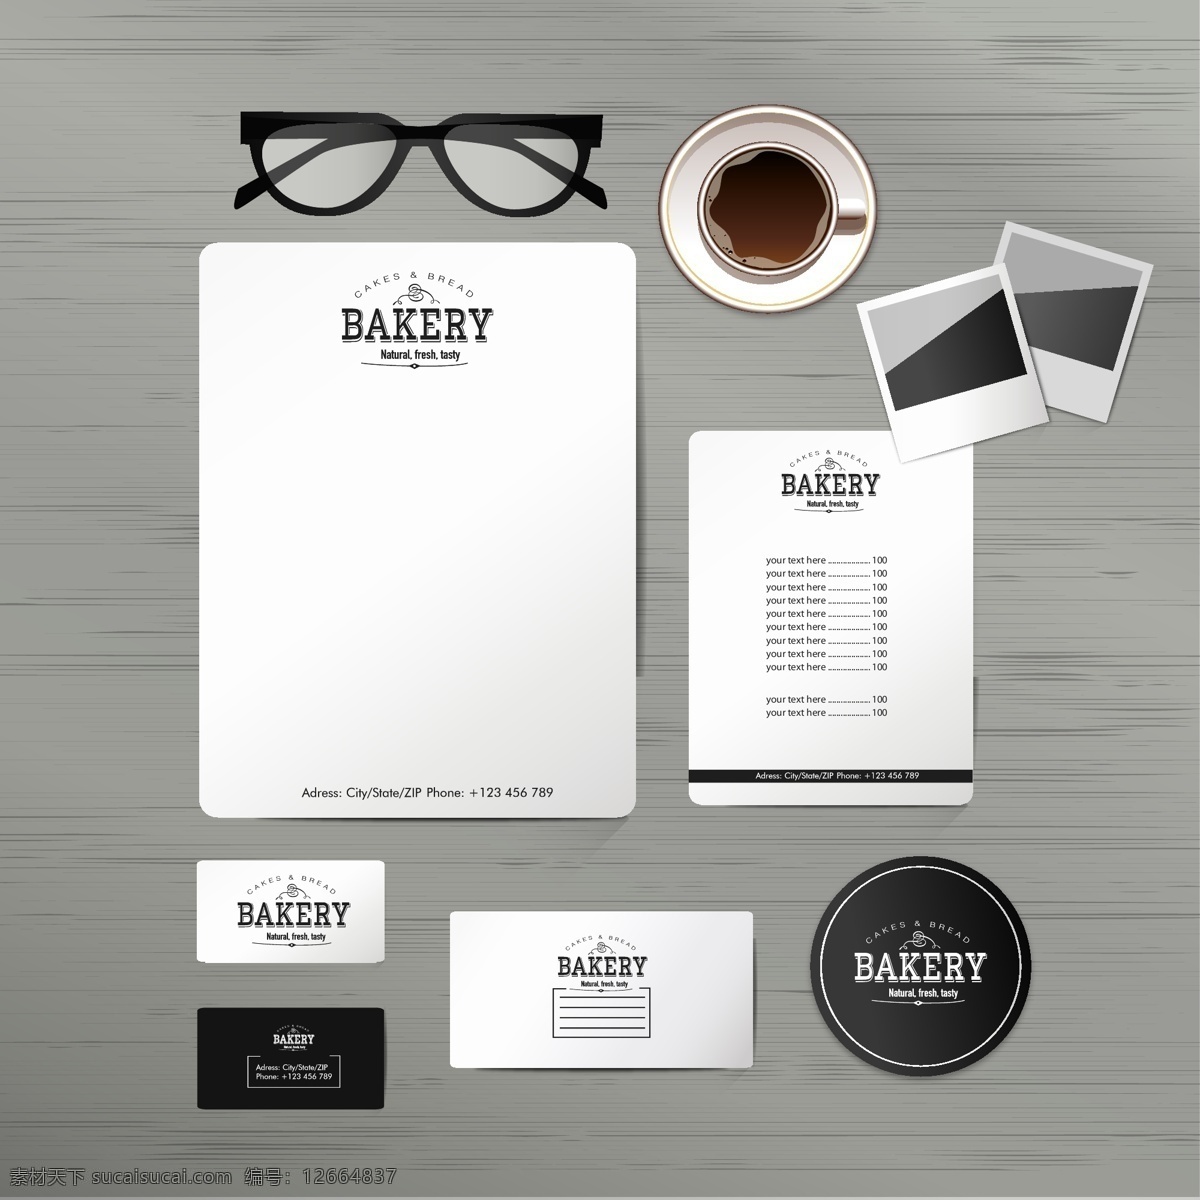 办公室 办公用品 笔记本 公司 灰色 品牌 矢量设计 企业形象 部分 物料 复古咖啡 眼镜 市场营销 文具 视觉 矢量 展板 企业文化展板